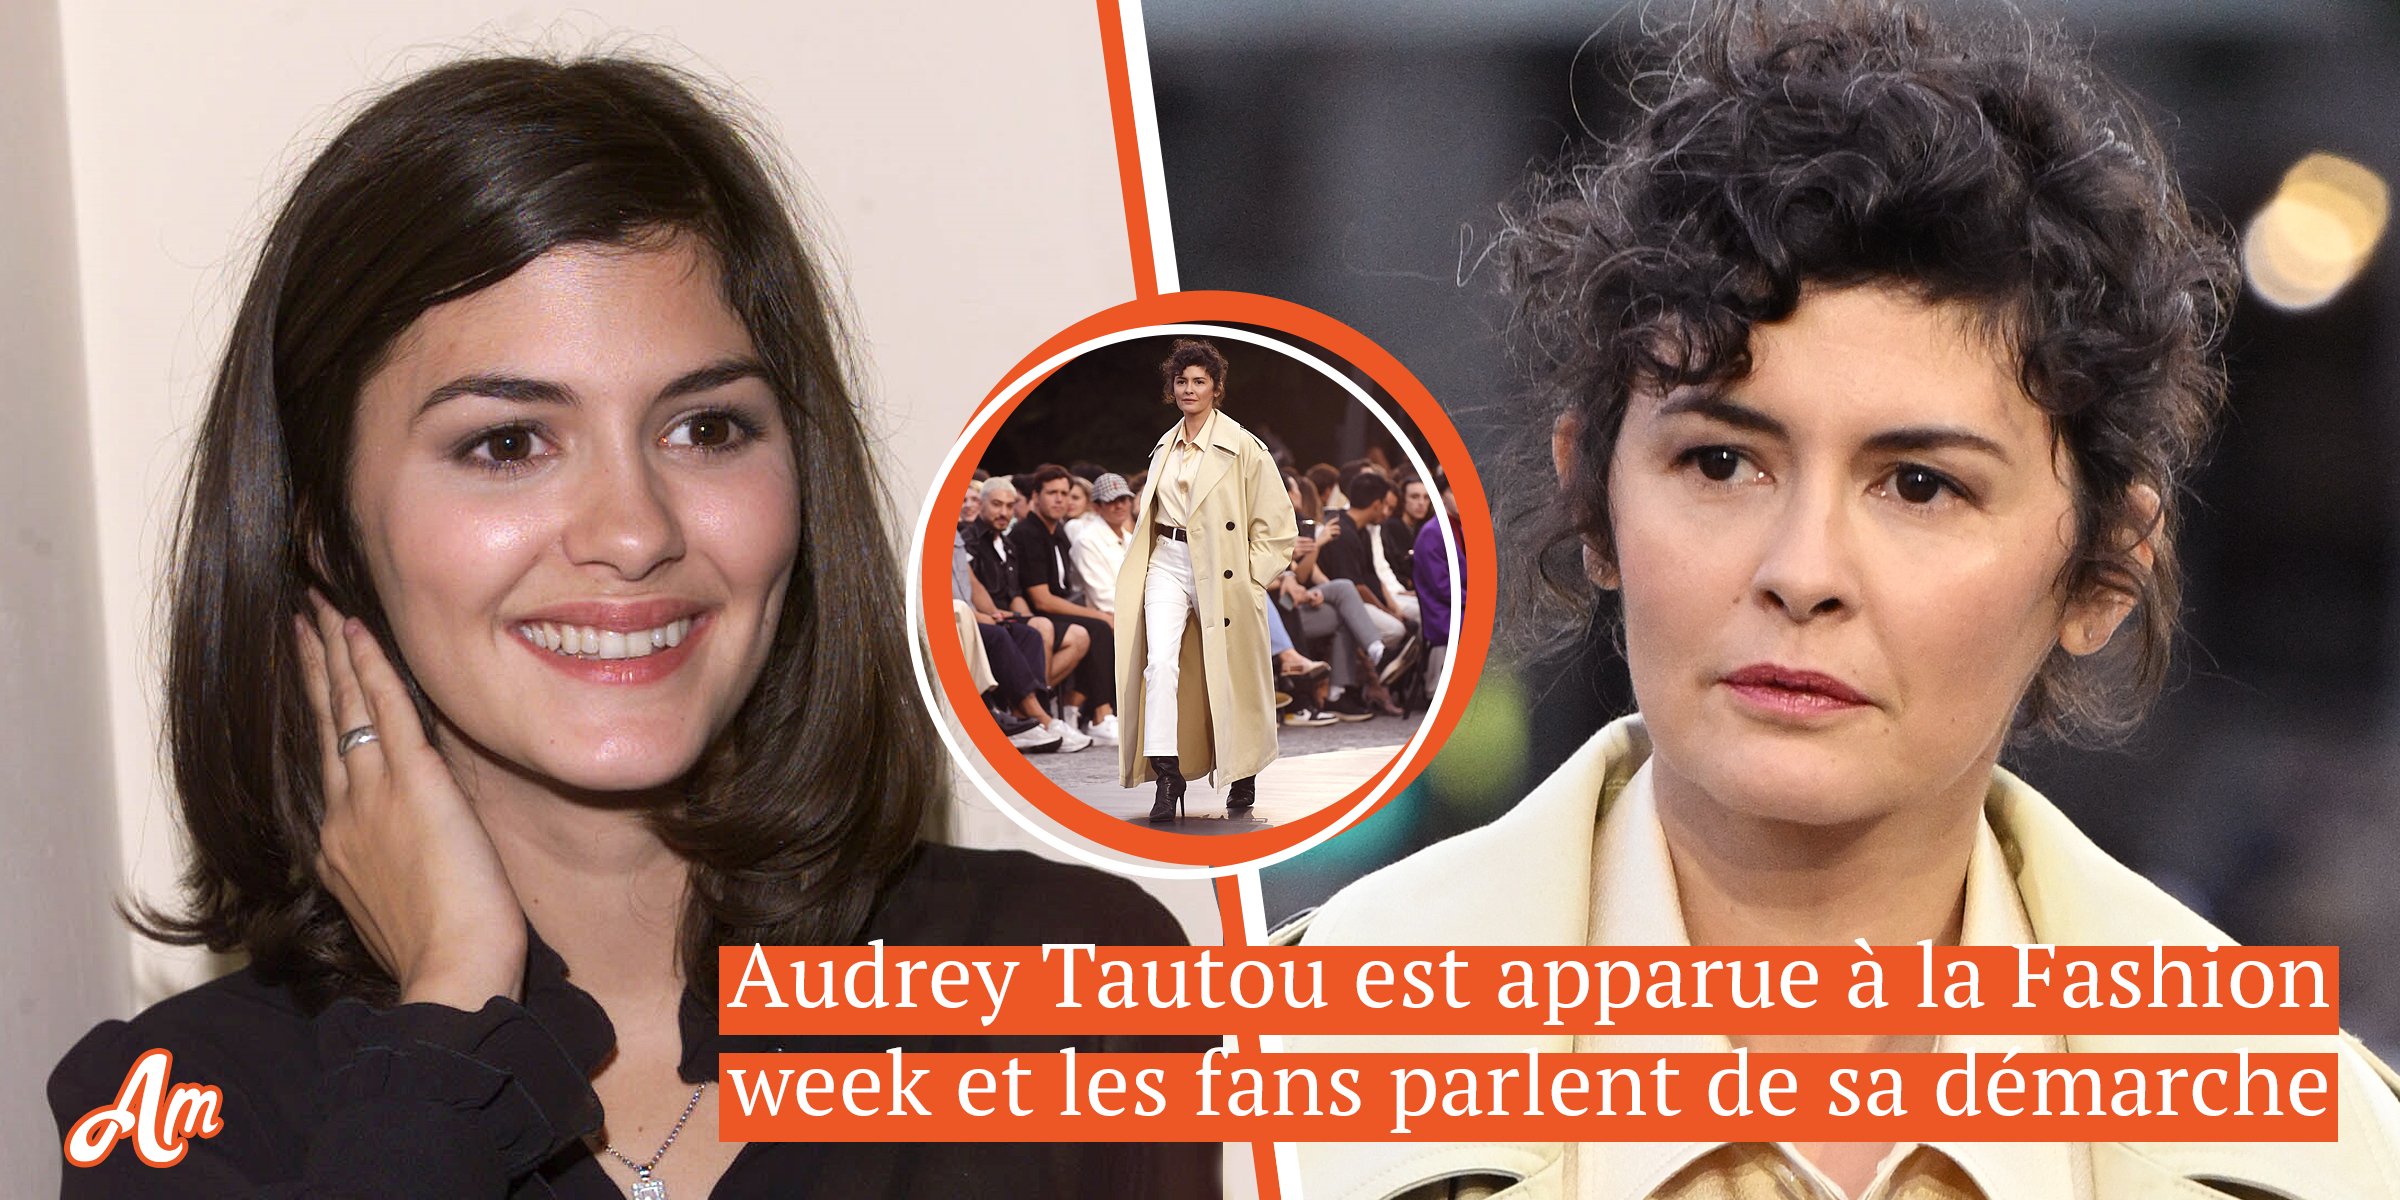 Audrey Tautou a renoncé à sa carrière d'actrice avec quelques cheveux